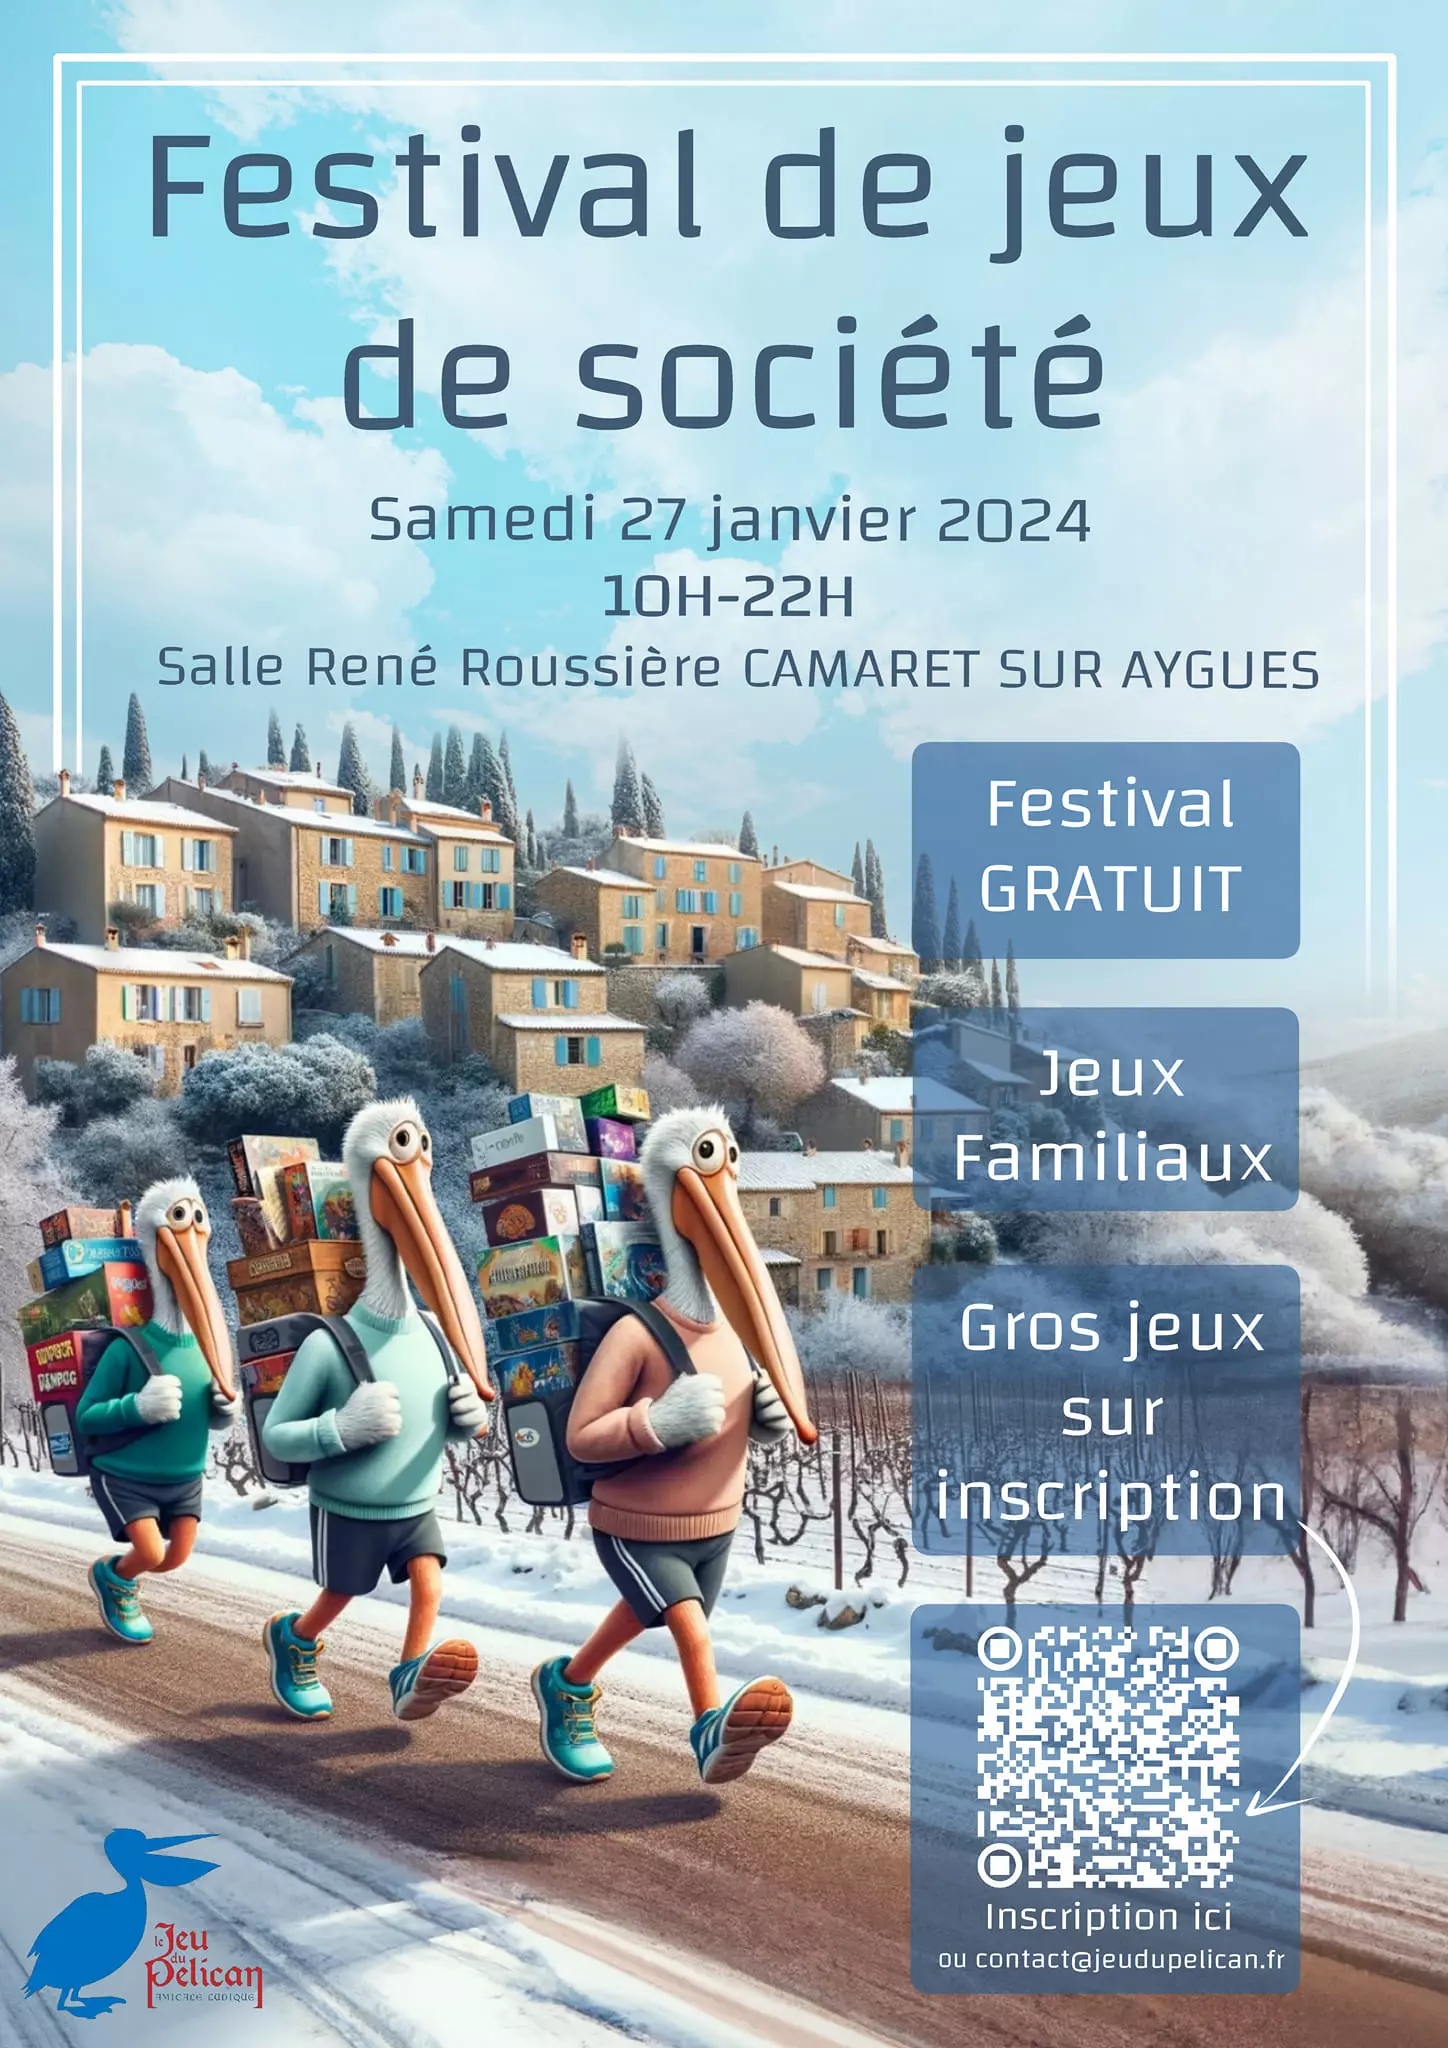 Festival de jeux de société organisé par Le jeu du pélican le samedi 27 janvier de 10h00 à 22h00 à la salle René Roussière